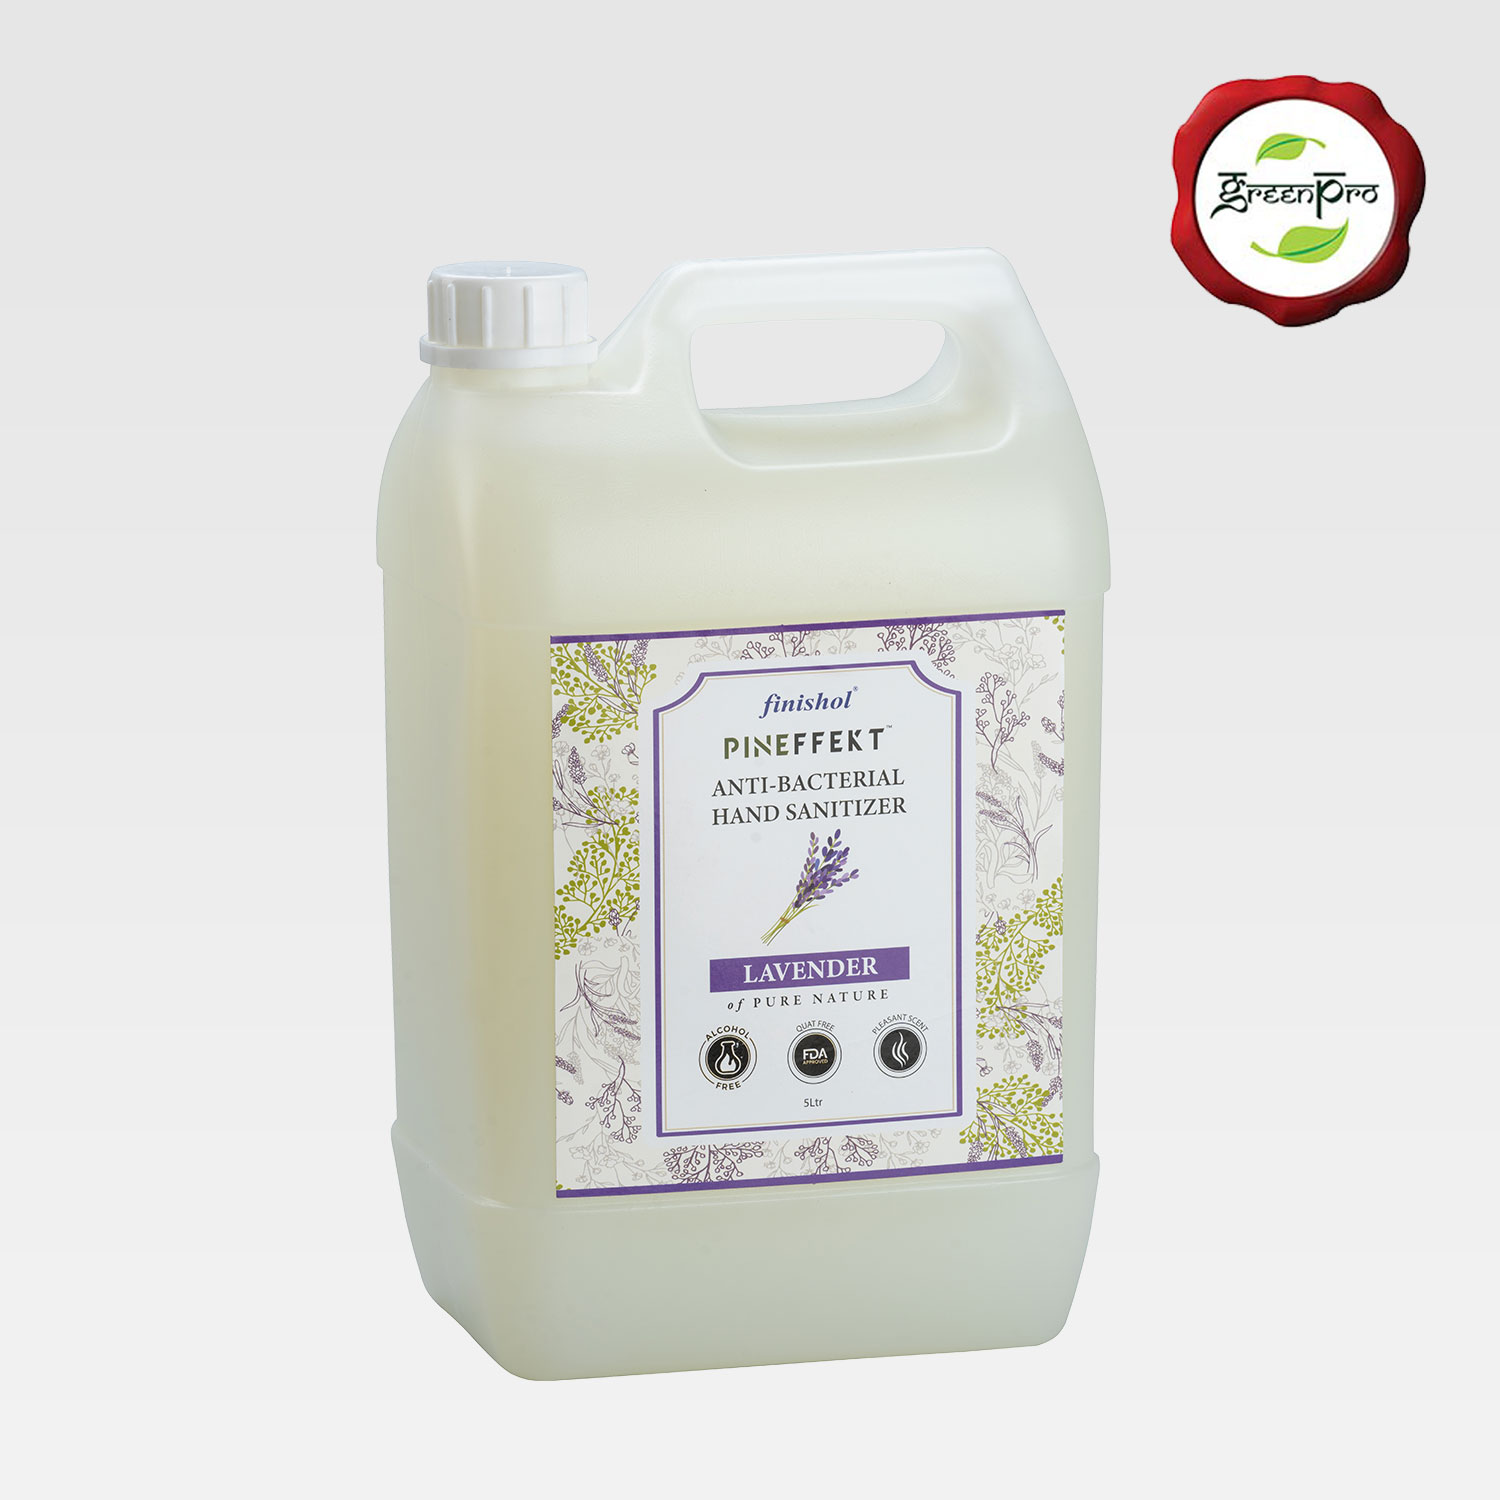 Hand Sanitizer for Industrial Use - Pineffekt Lavender(10 ltr)